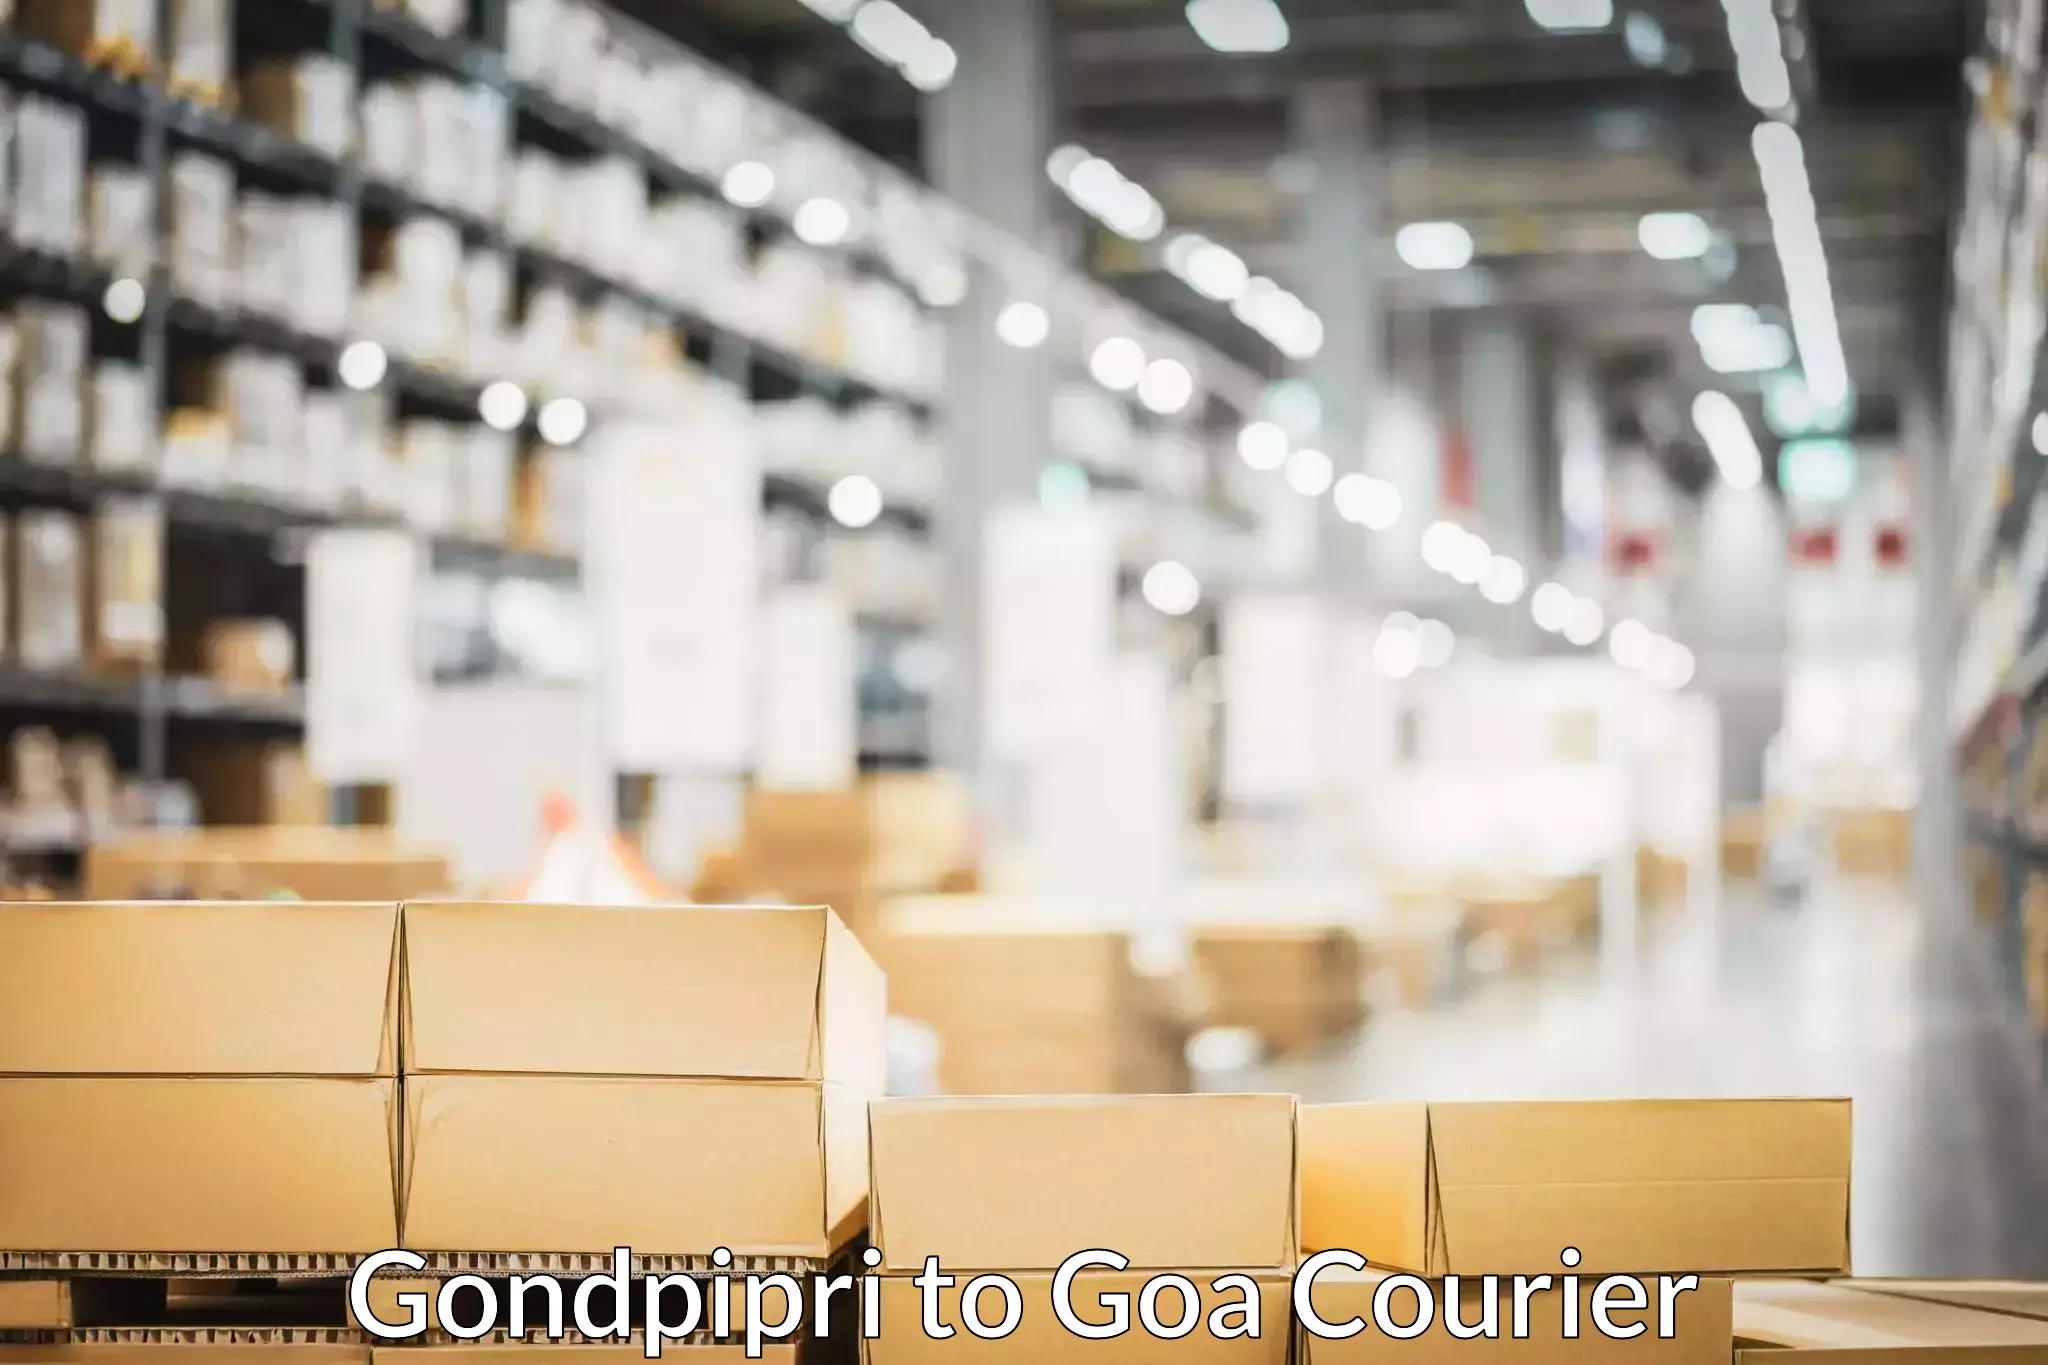 Home relocation and storage Gondpipri to Goa